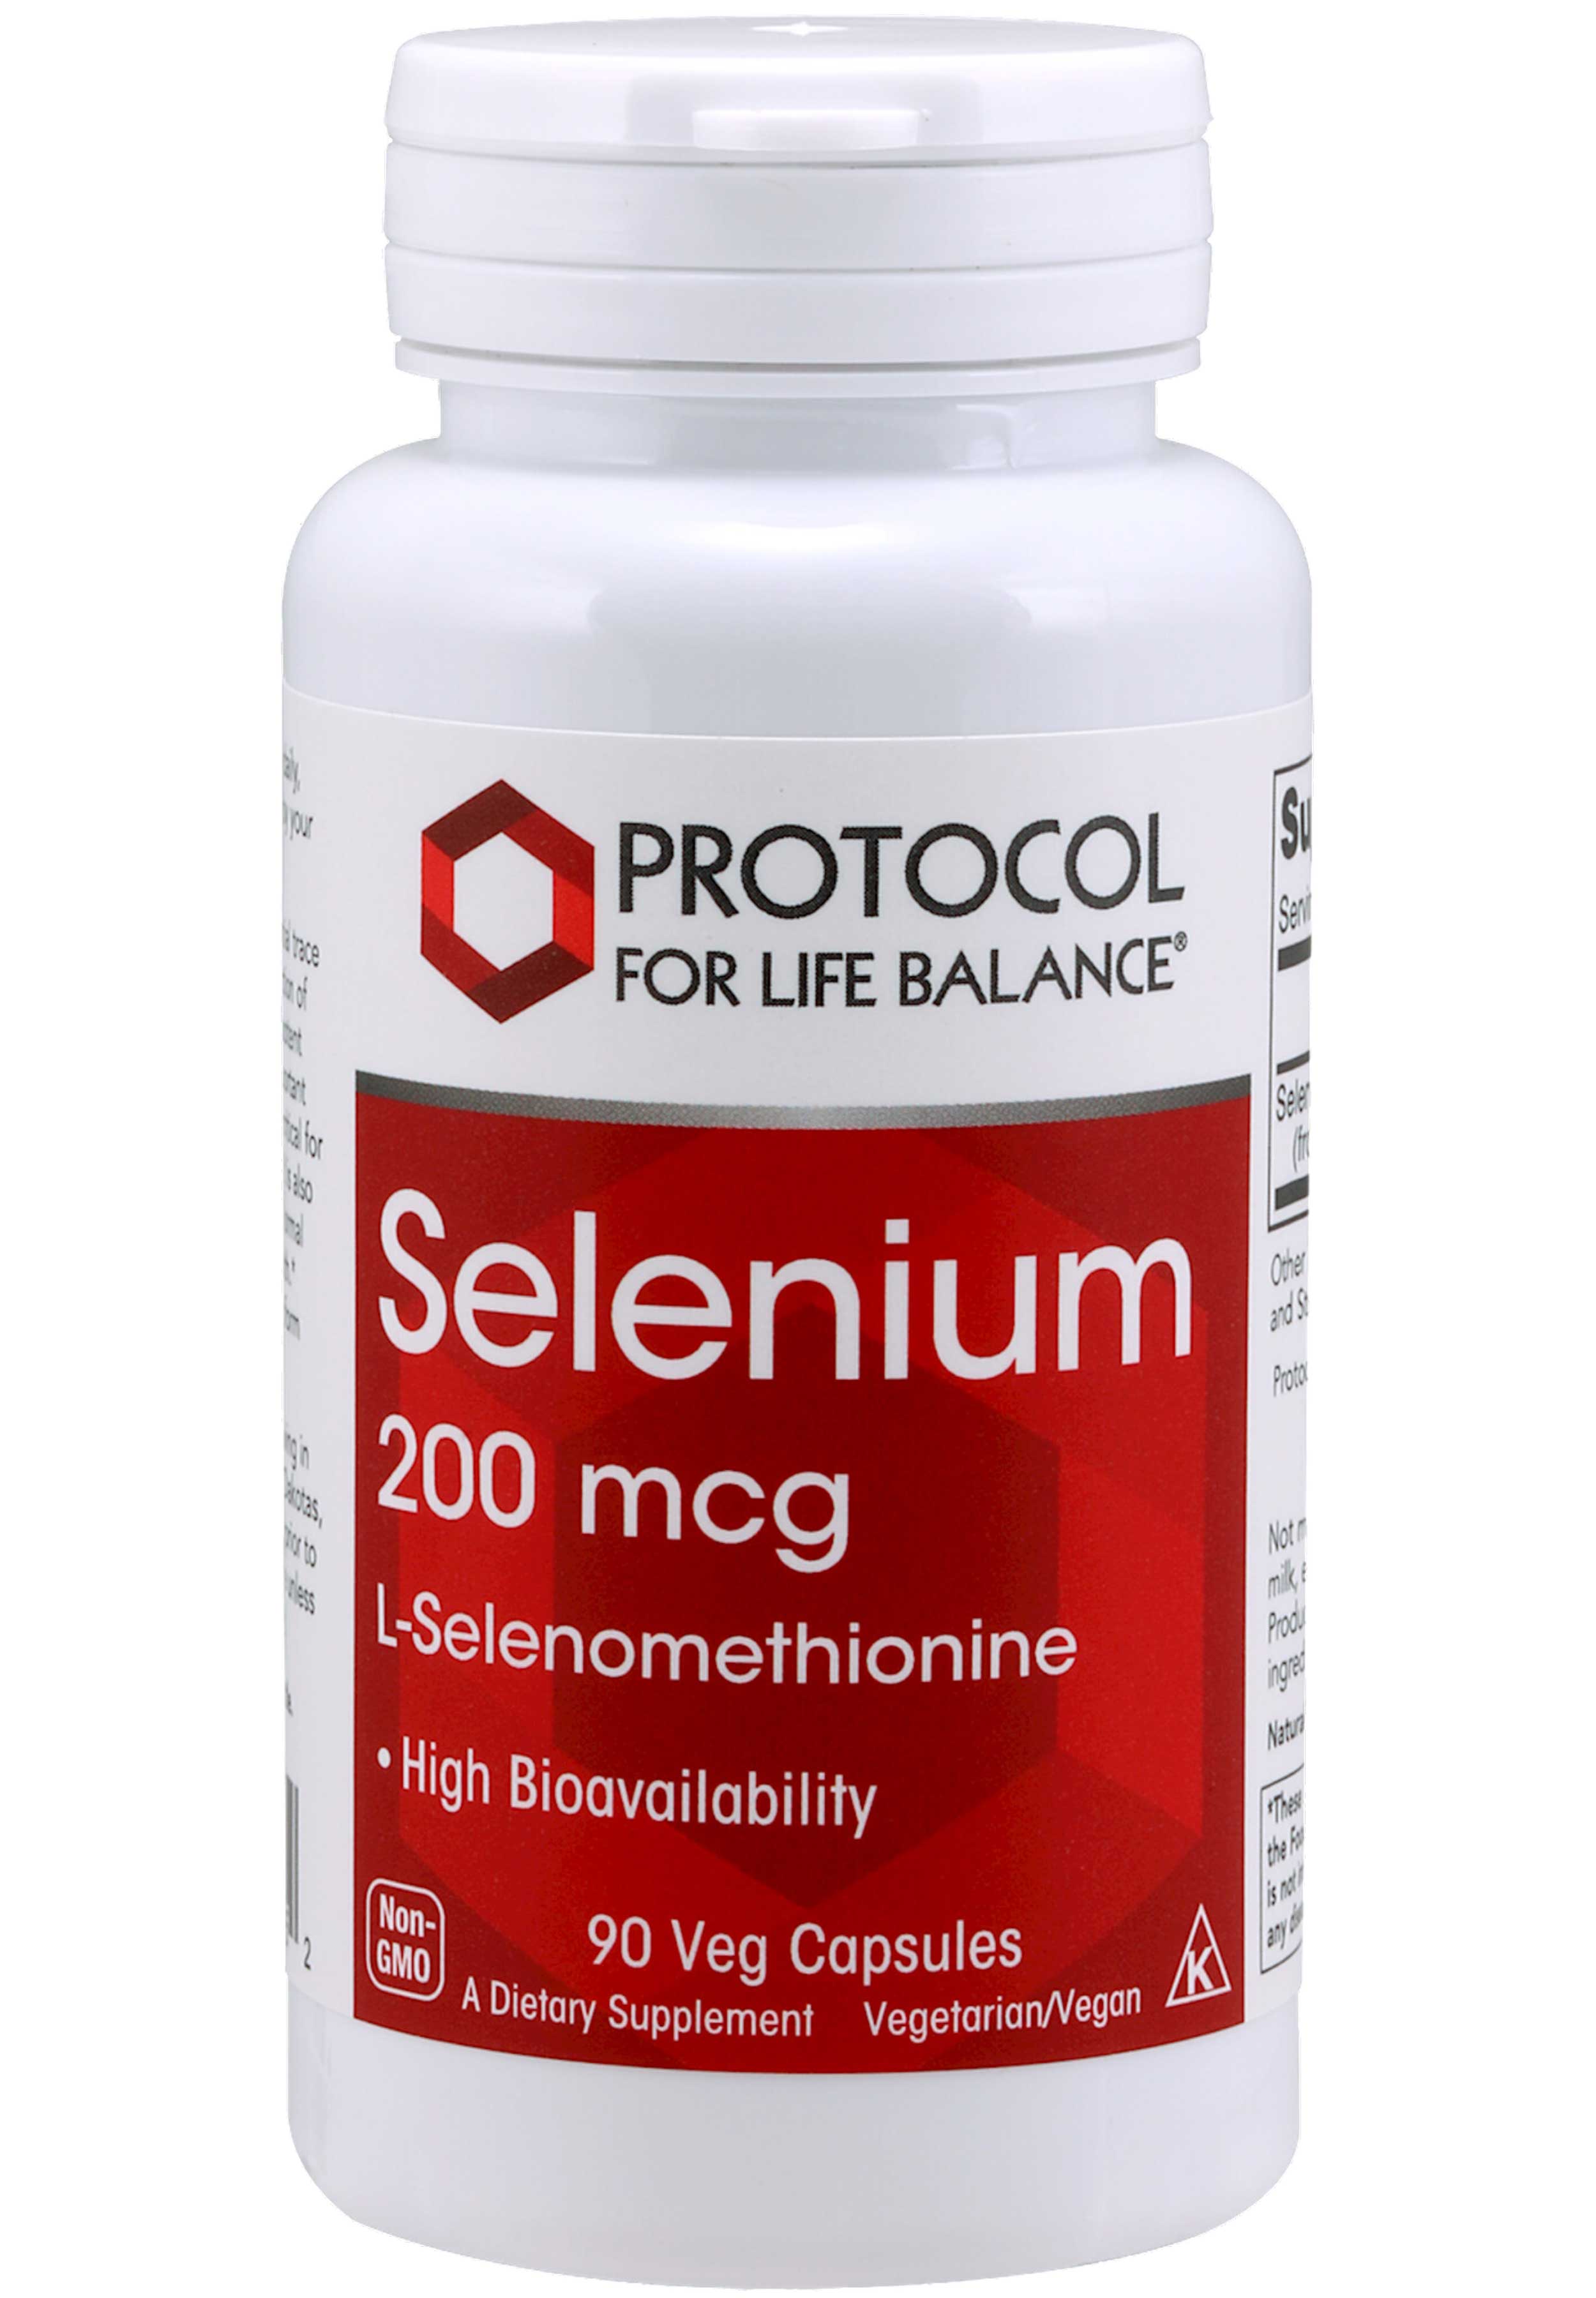 Protocol for Life Balance Selenium 200 mcg